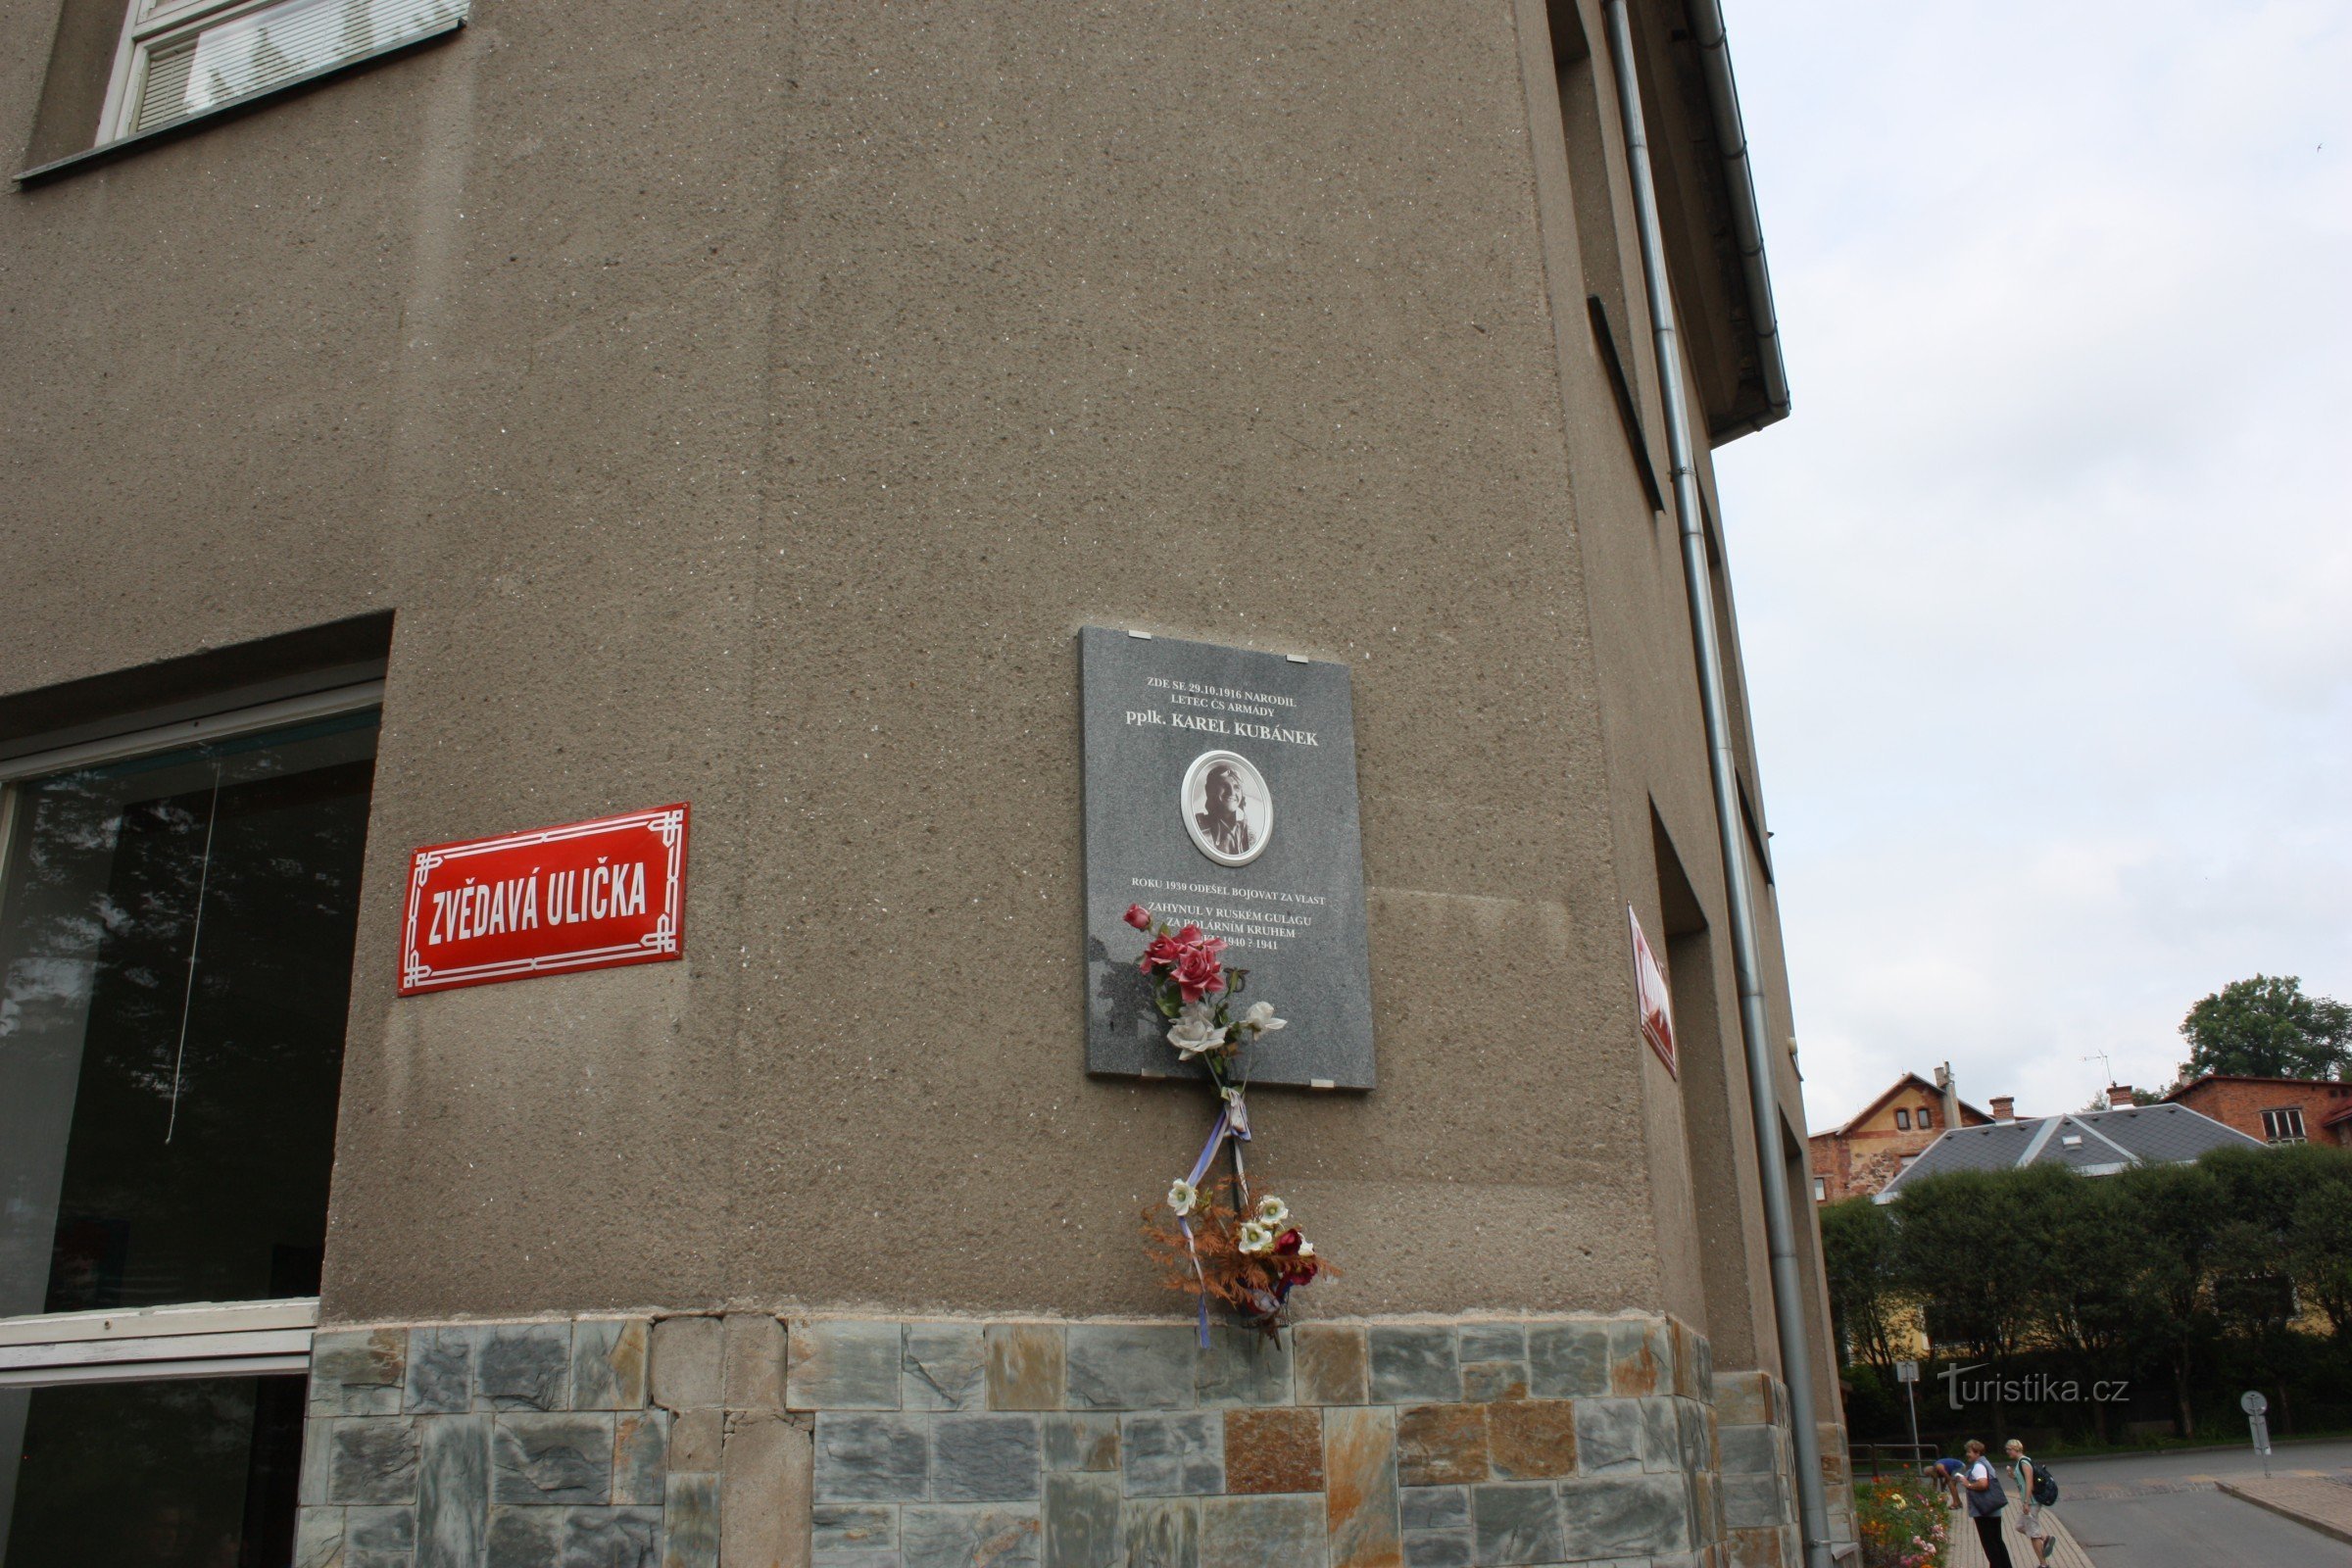 Αναμνηστική πλάκα στη γωνία της Zvědavá ulička στο Jilemnice